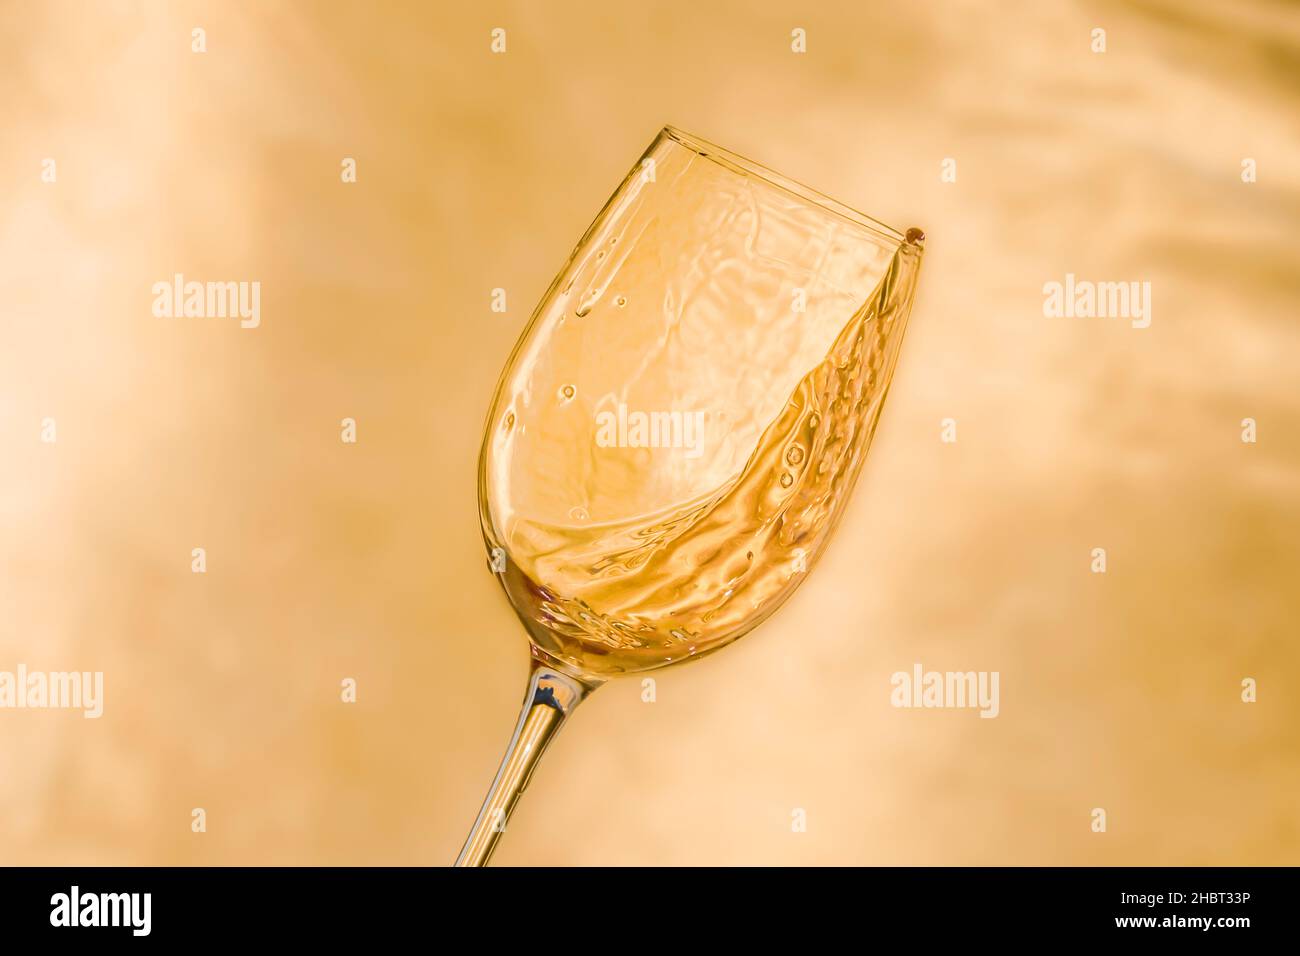 Un verre de vin appétissant sur fond doré Banque D'Images